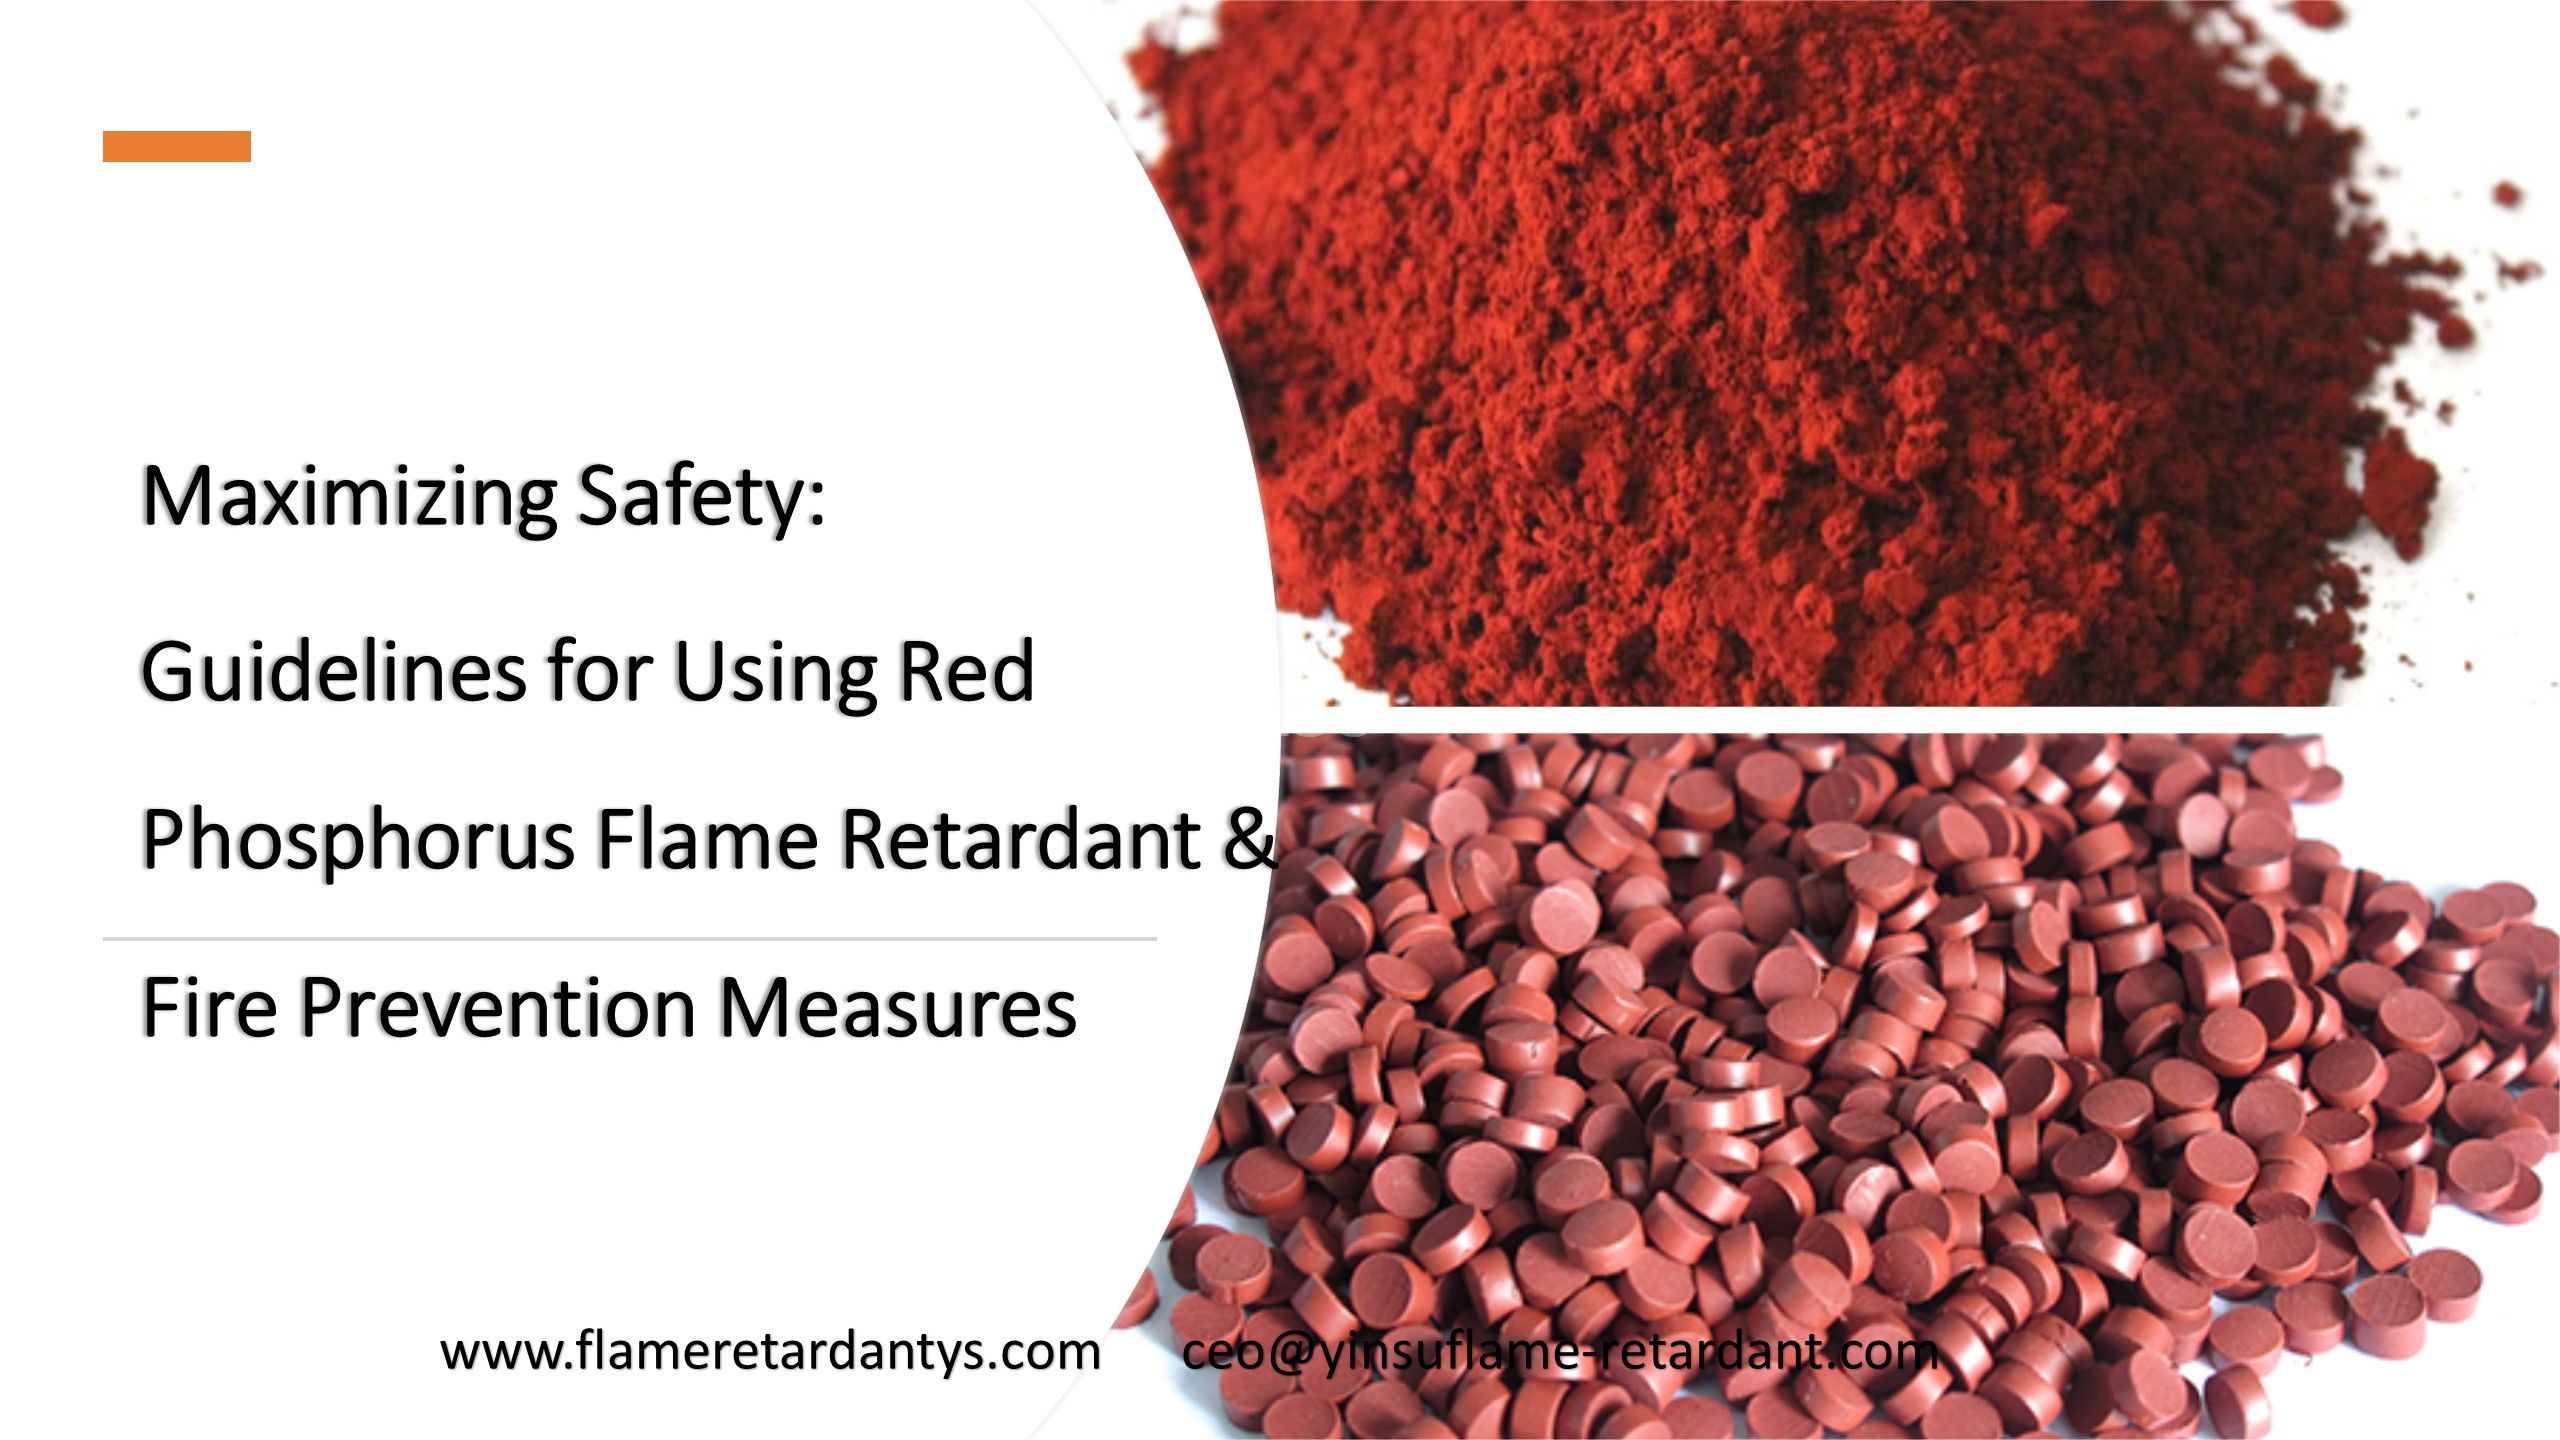 Максимизация безопасности: рекомендации по использованию огнезащитного состава с красным фосфором и меры противопожарной защиты